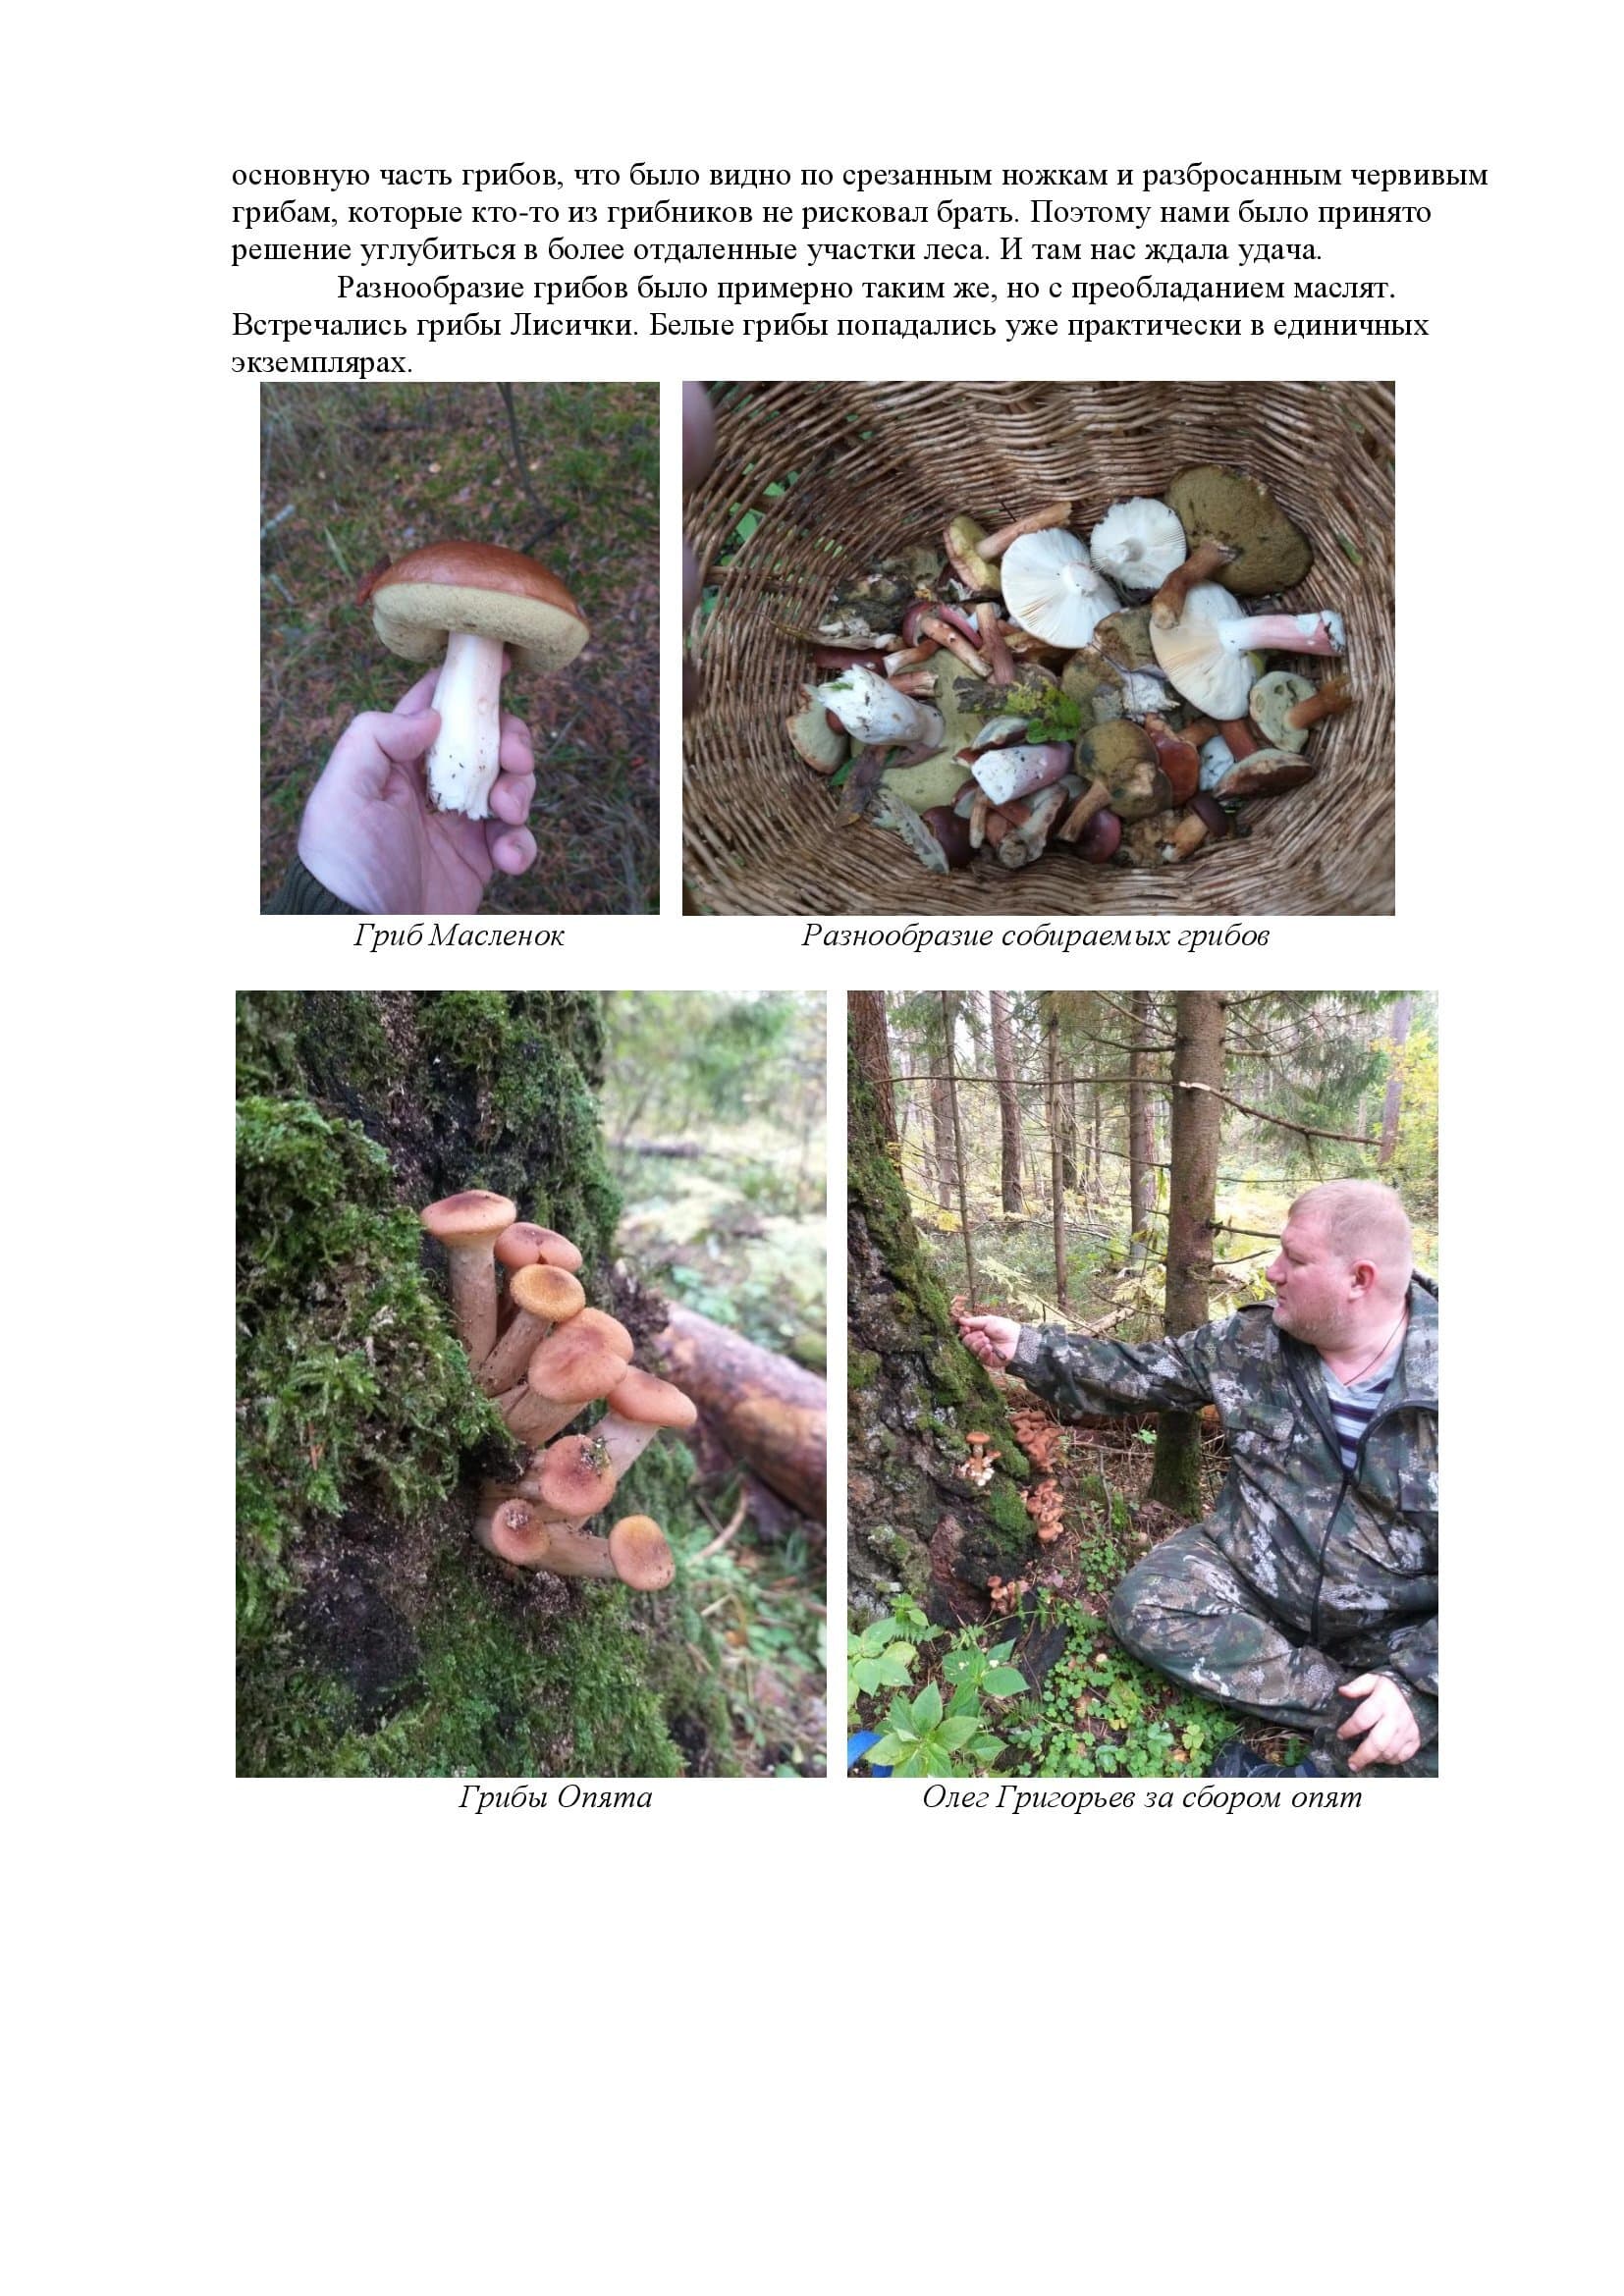 По следам грибных троп или повесть о похождениях грибников-любителей - фото 4